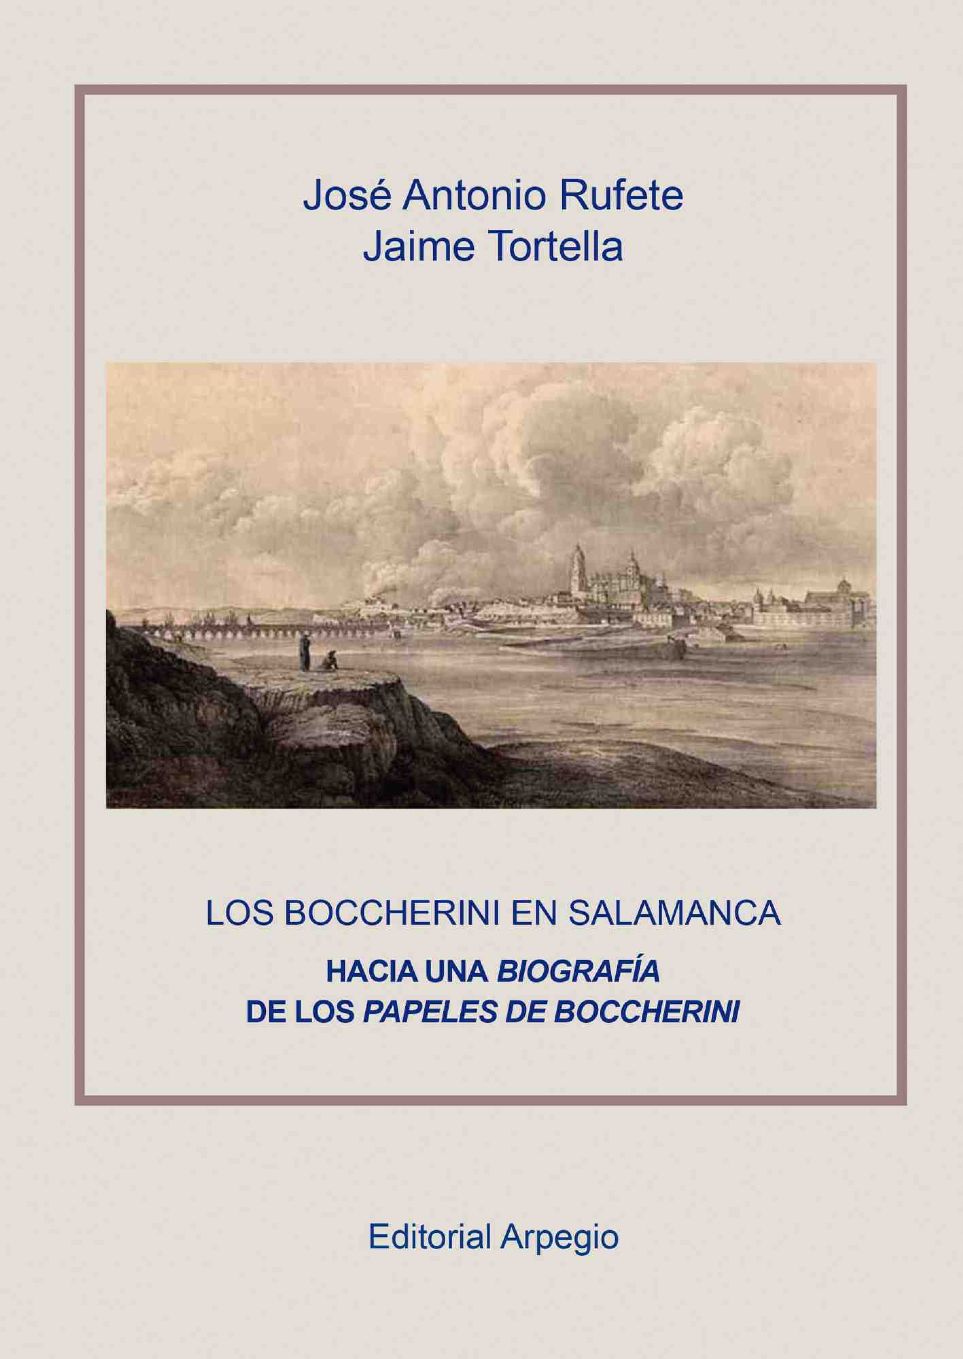 Libro Los Boccherini en Salamanca de Jos Antonio Rufete y Jaime Tortella [Editorial Arpegio]